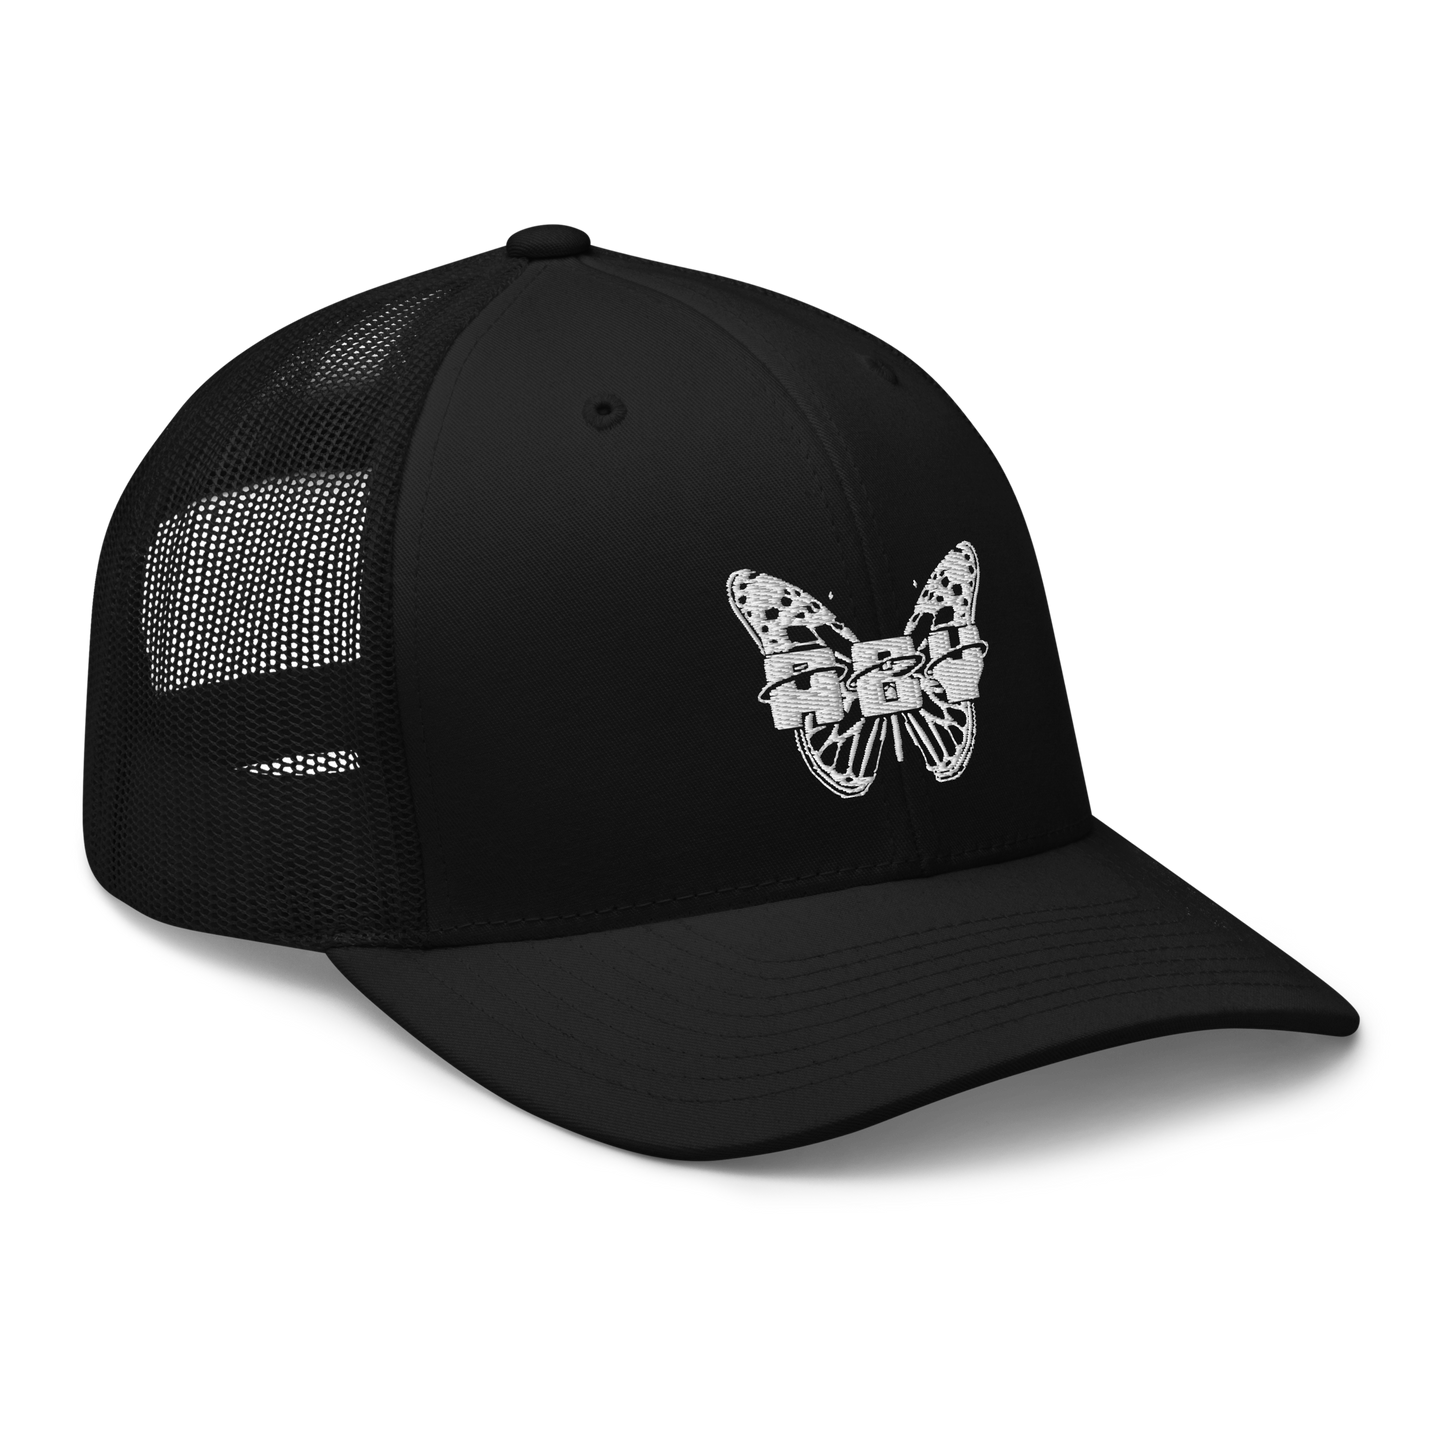 Butterfly Trucker Hat